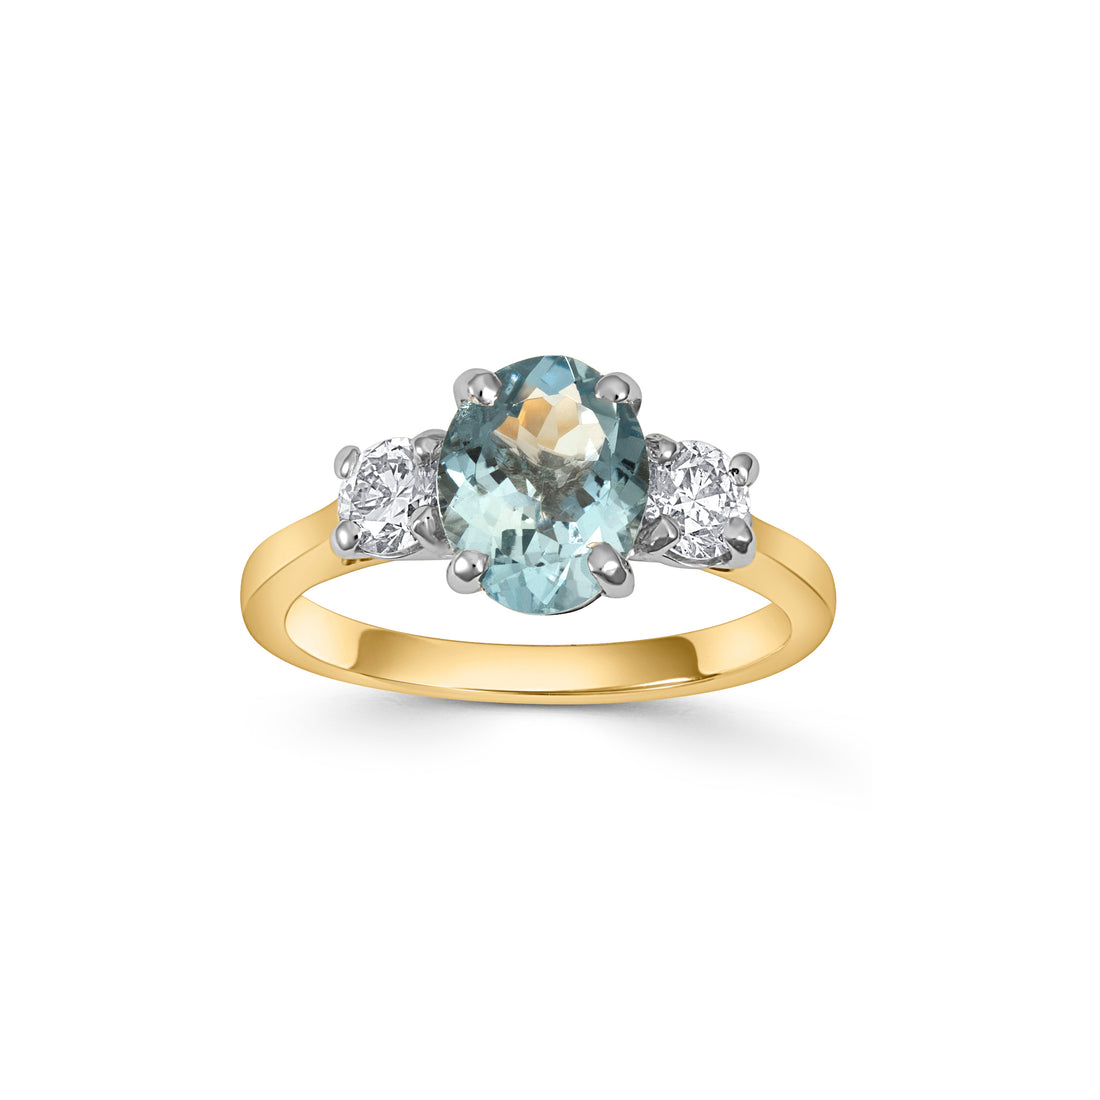 18ct Gold Aquamarine and Diamond Three Stone Ring - Robert Anthony Jewellers, Edinburgh